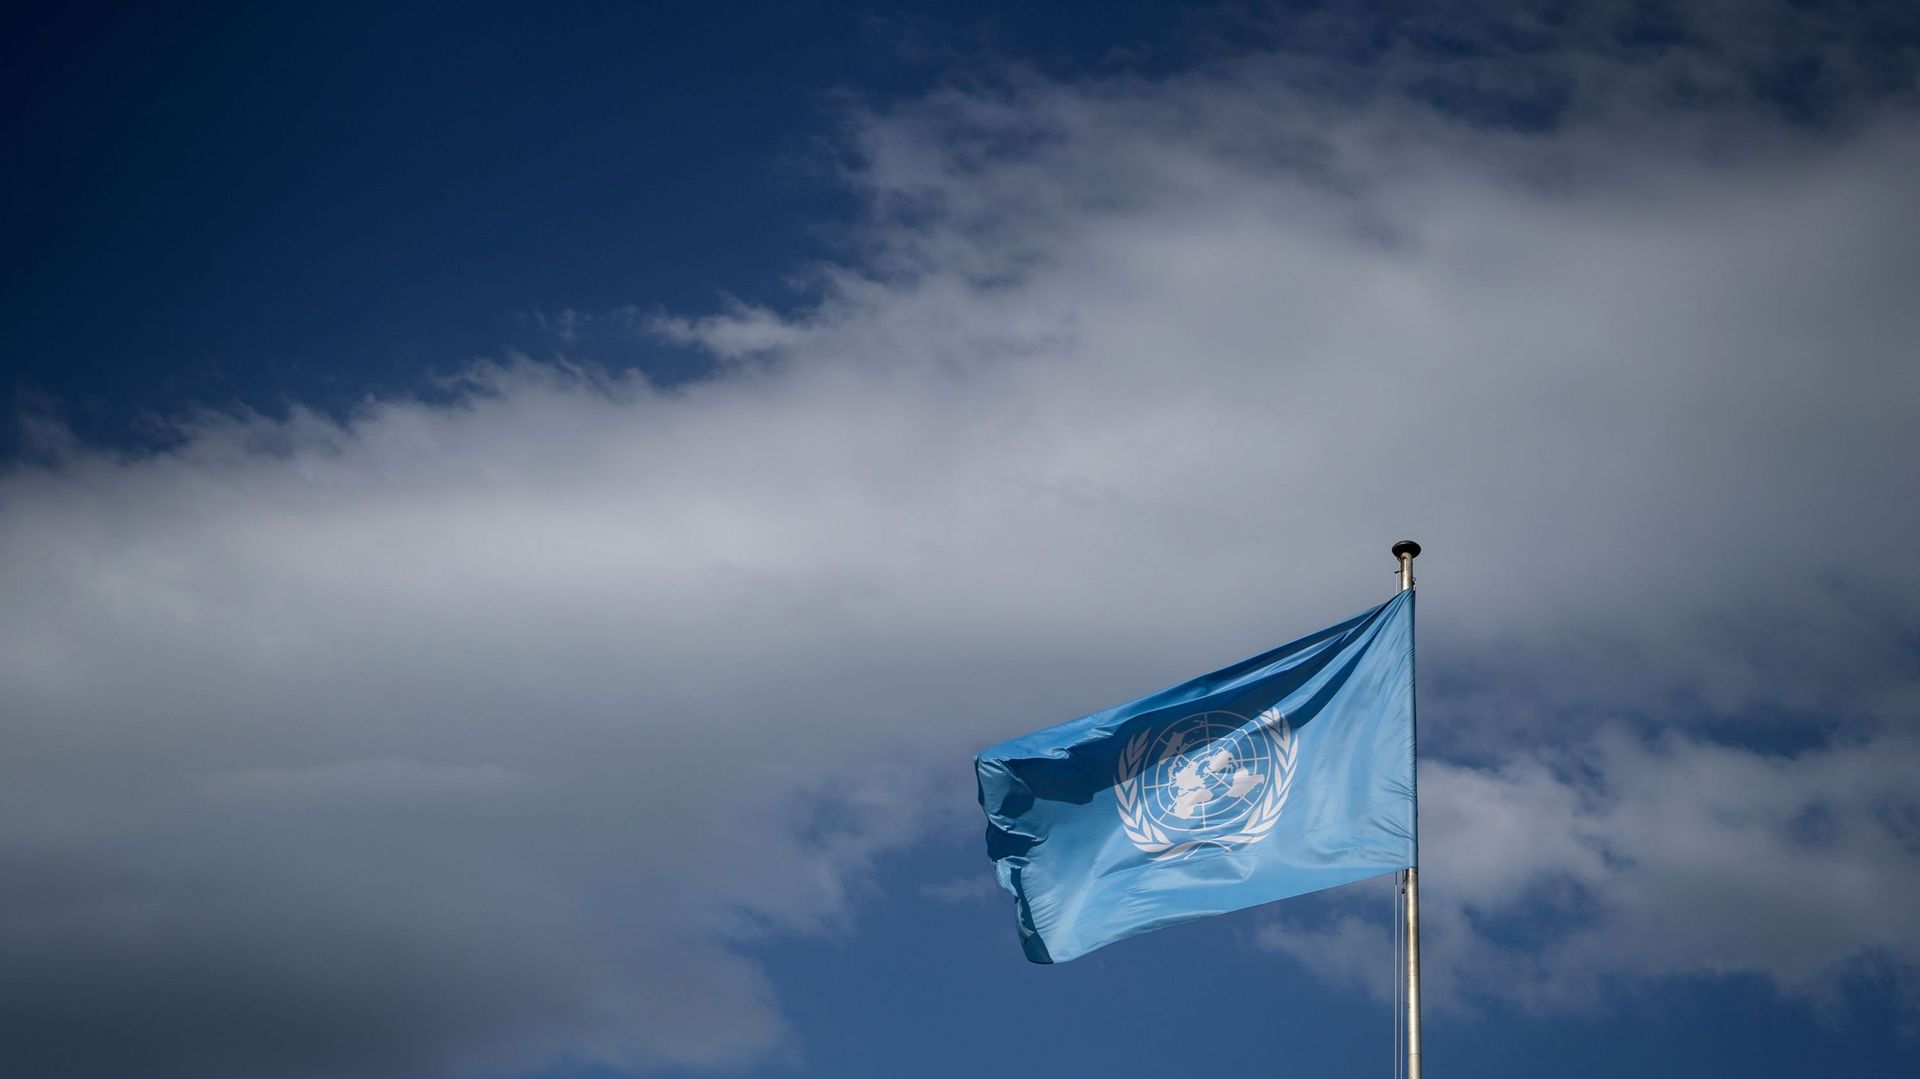 Assemblée générale de l'Onu : les USA sont une "sérieuse entrave" à la lutte contre le changement climatique, dit Pékin